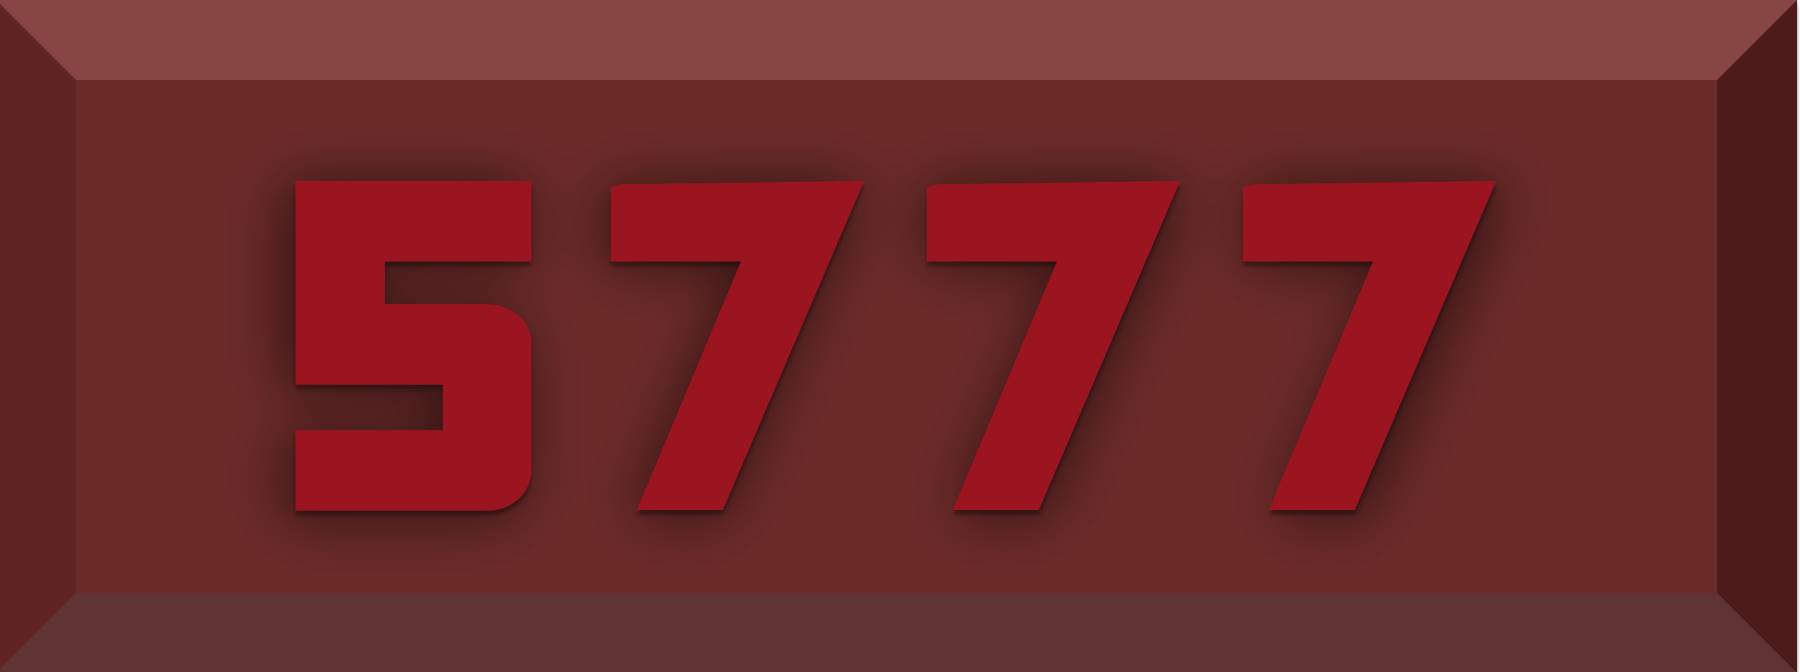 5777